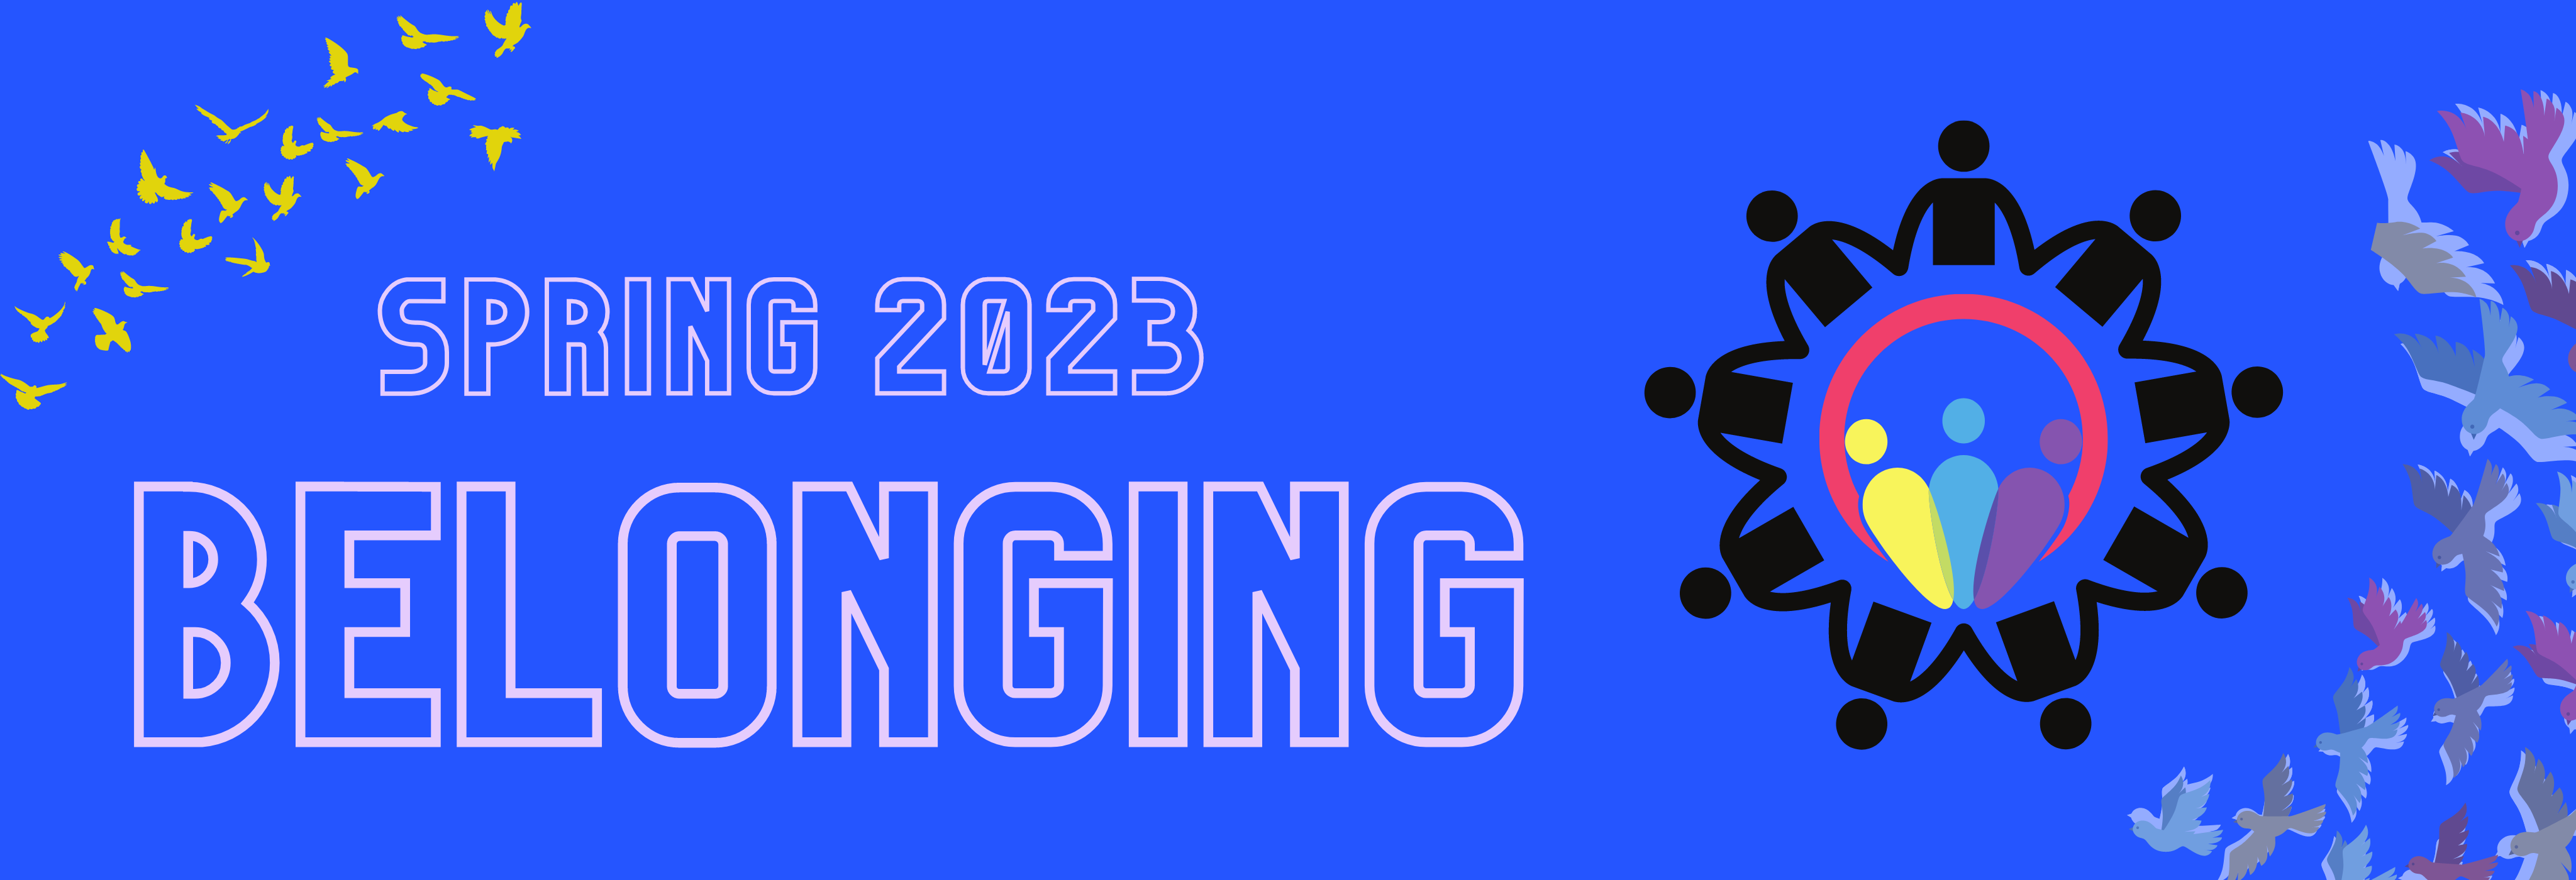 Spring 2023 belonging